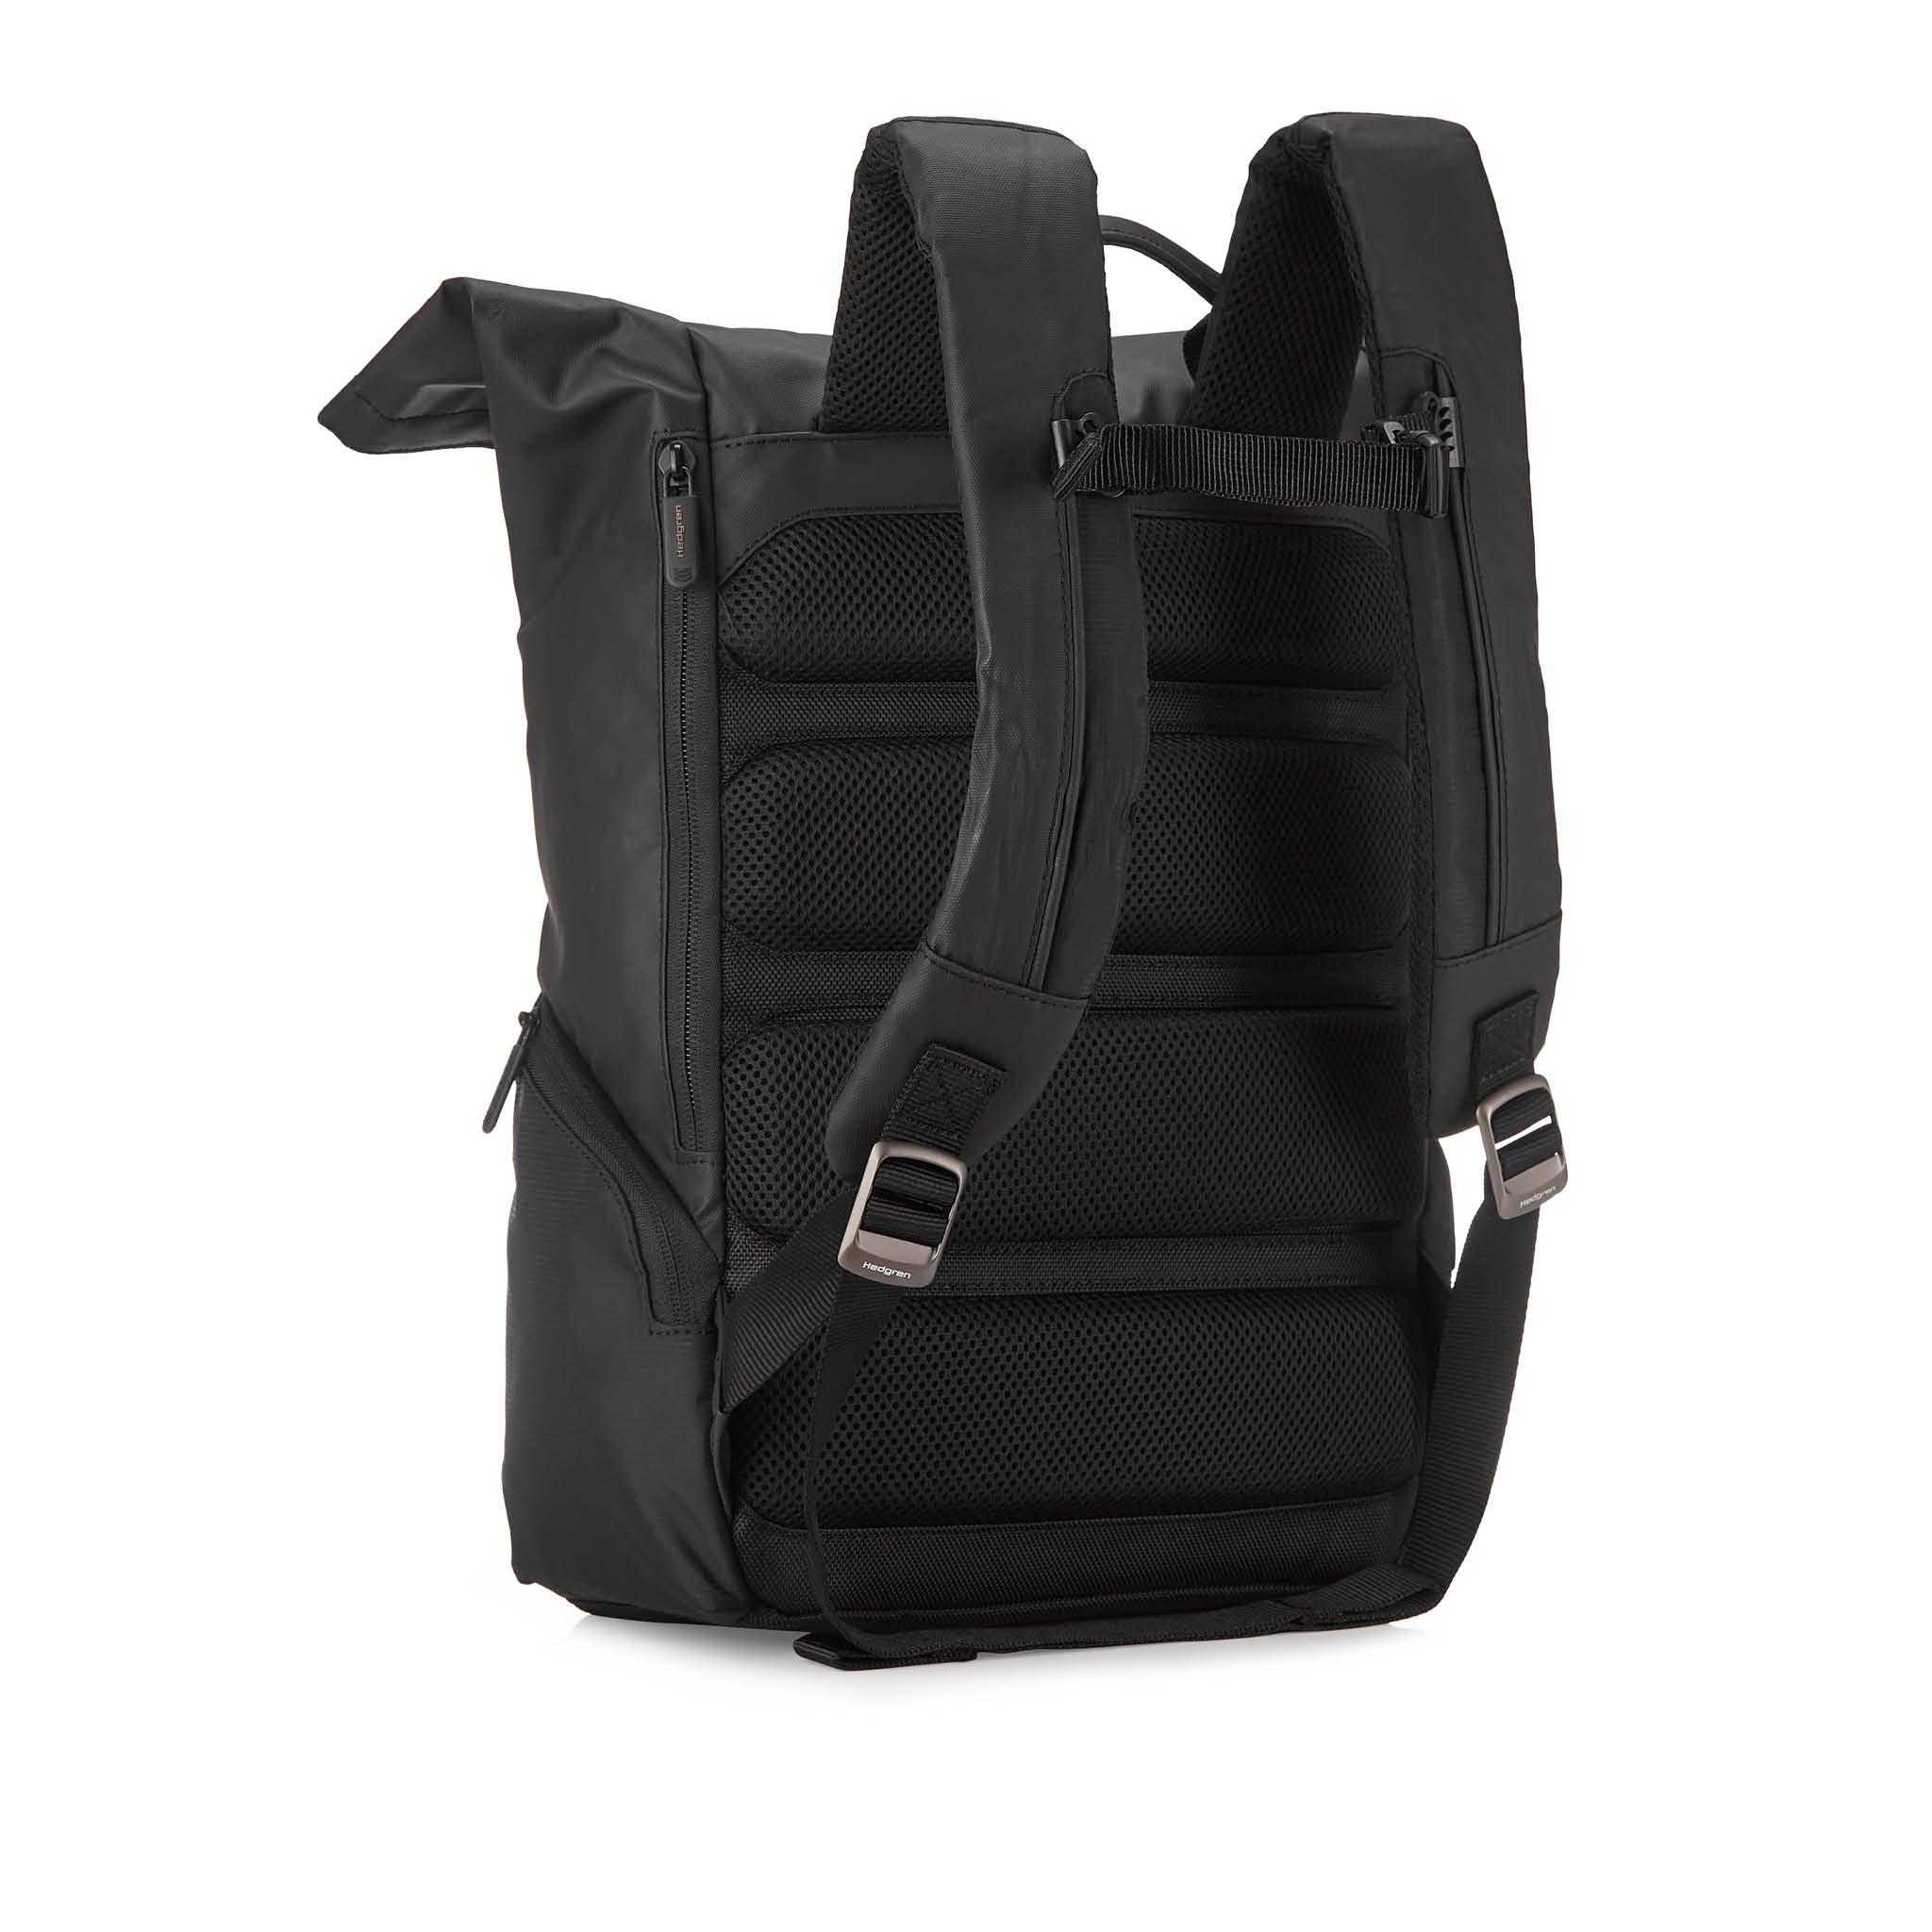 Hedgren Line RFID 15" Laptop Backpack